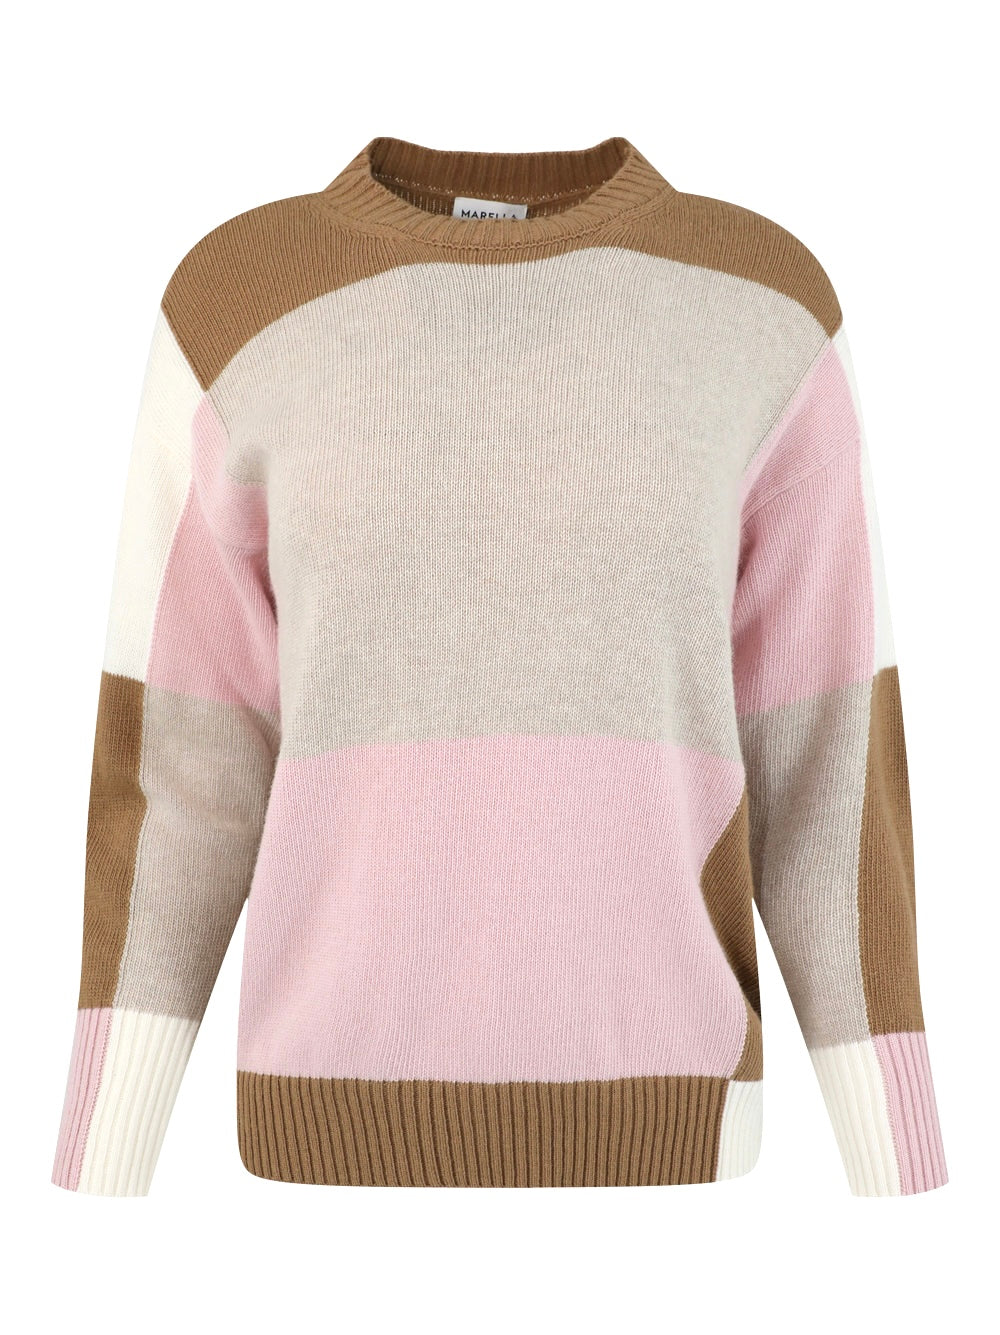 Marella Dingo Colorblock Sweater in Camel